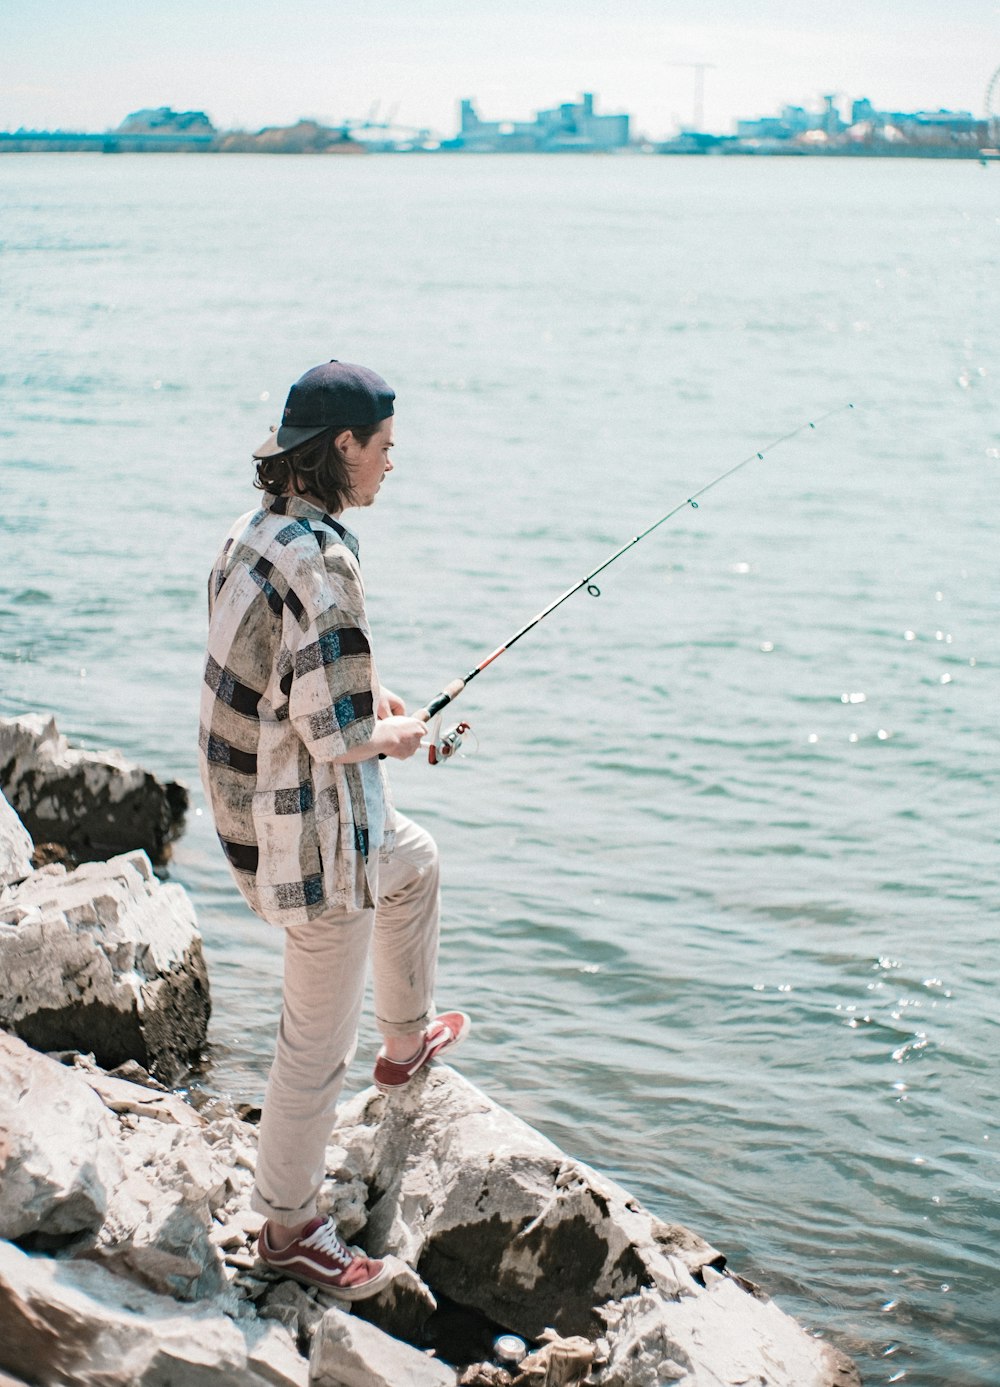 Hombre con camisa de vestir a cuadros azul y blanco y pantalones marrones pescando en el mar durante el día